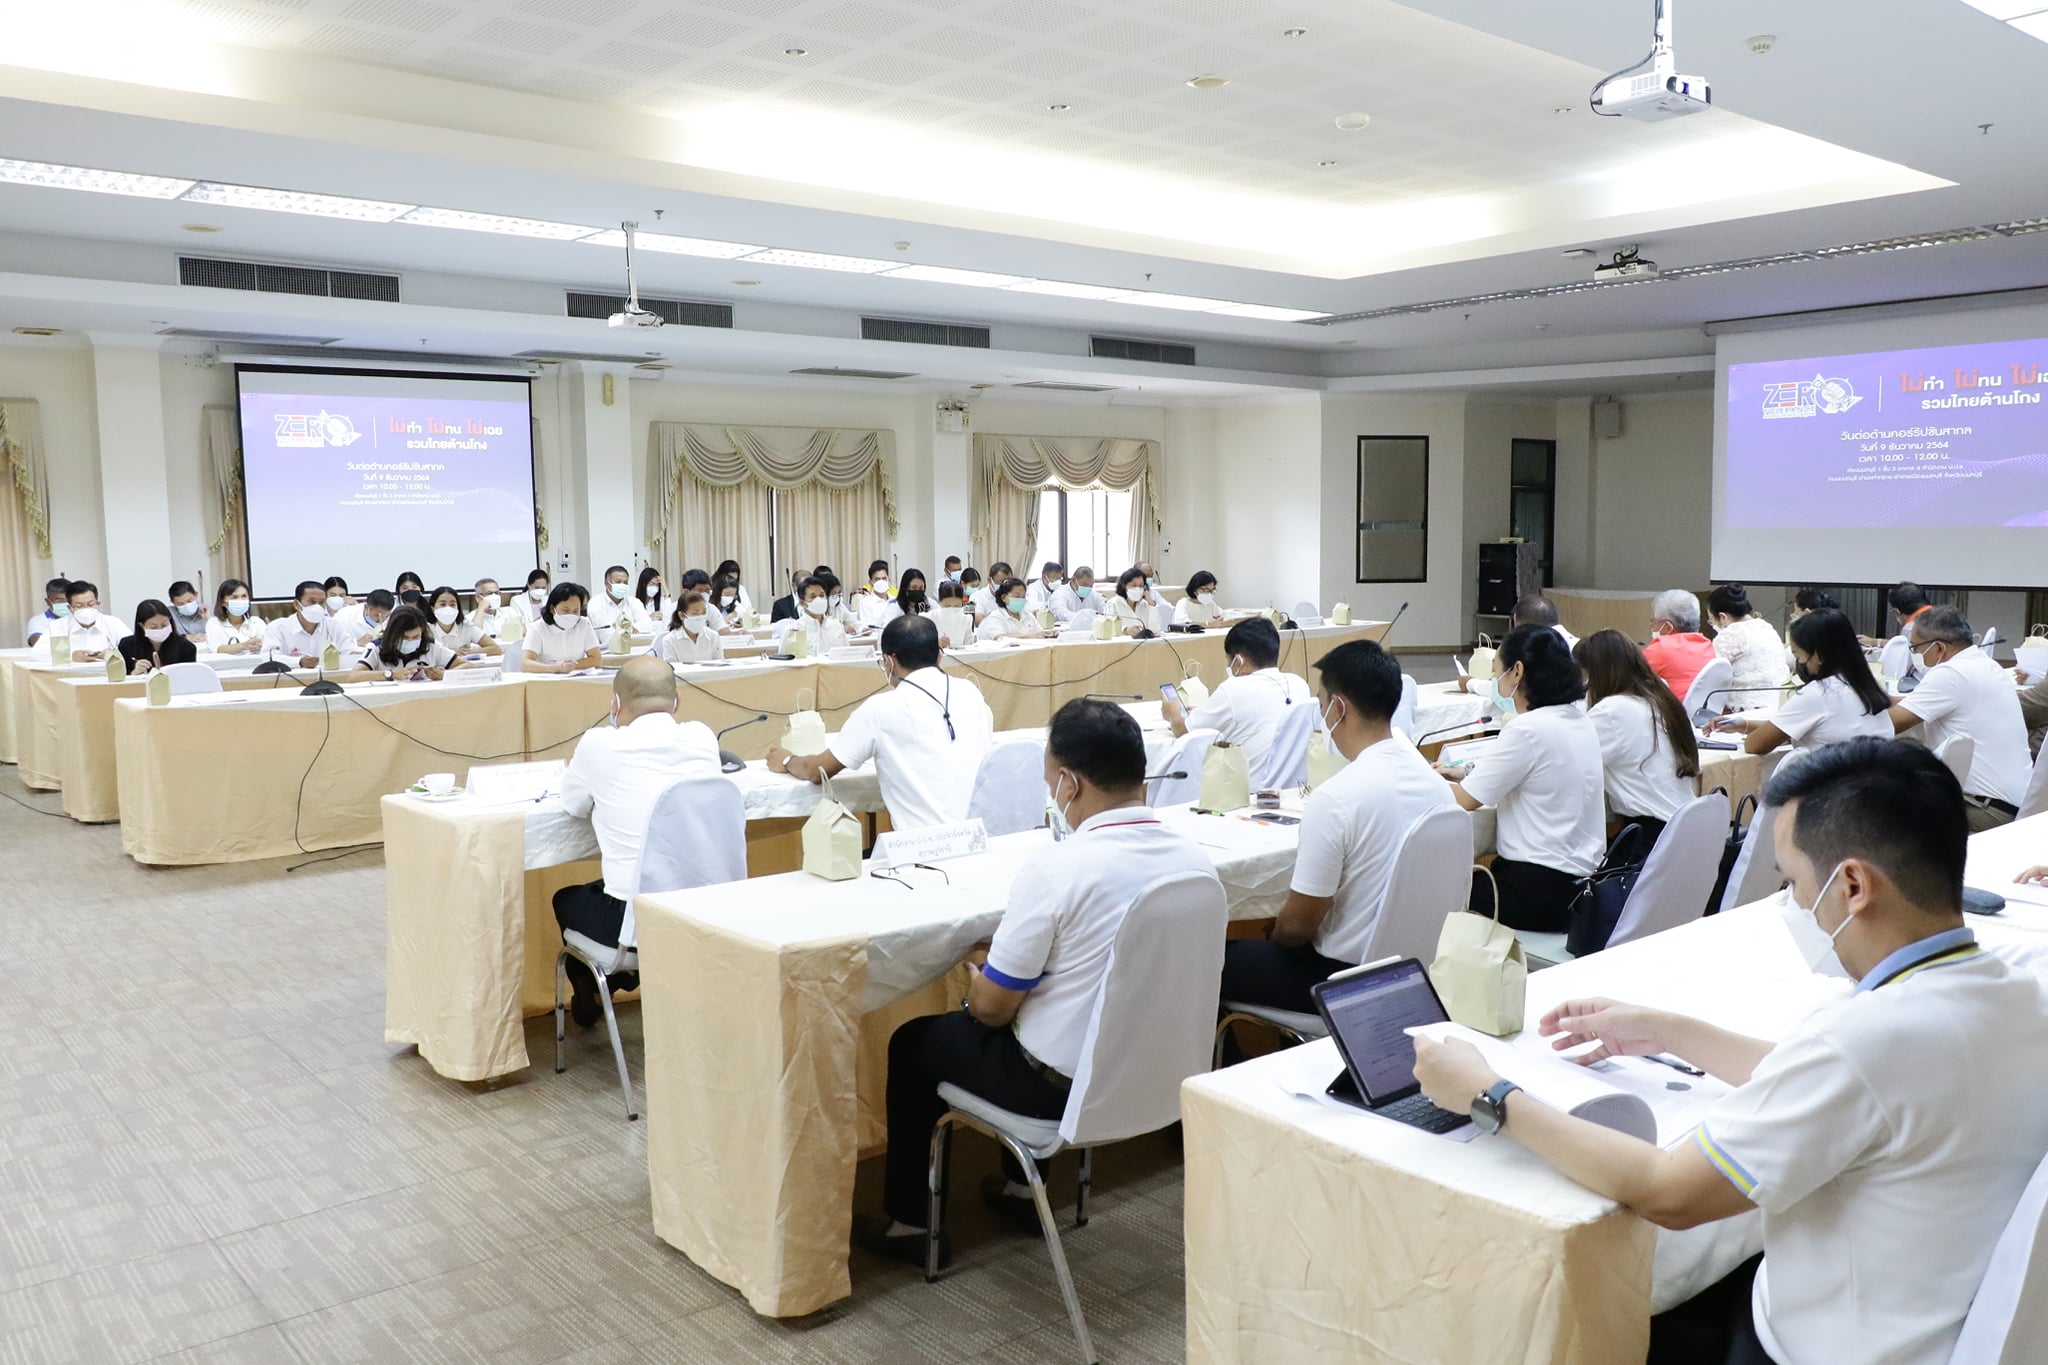 ประชุมและร่วมงานวันต่อต้านคอร์รัปชั่นสากล(ประเทศไทย) Image 5